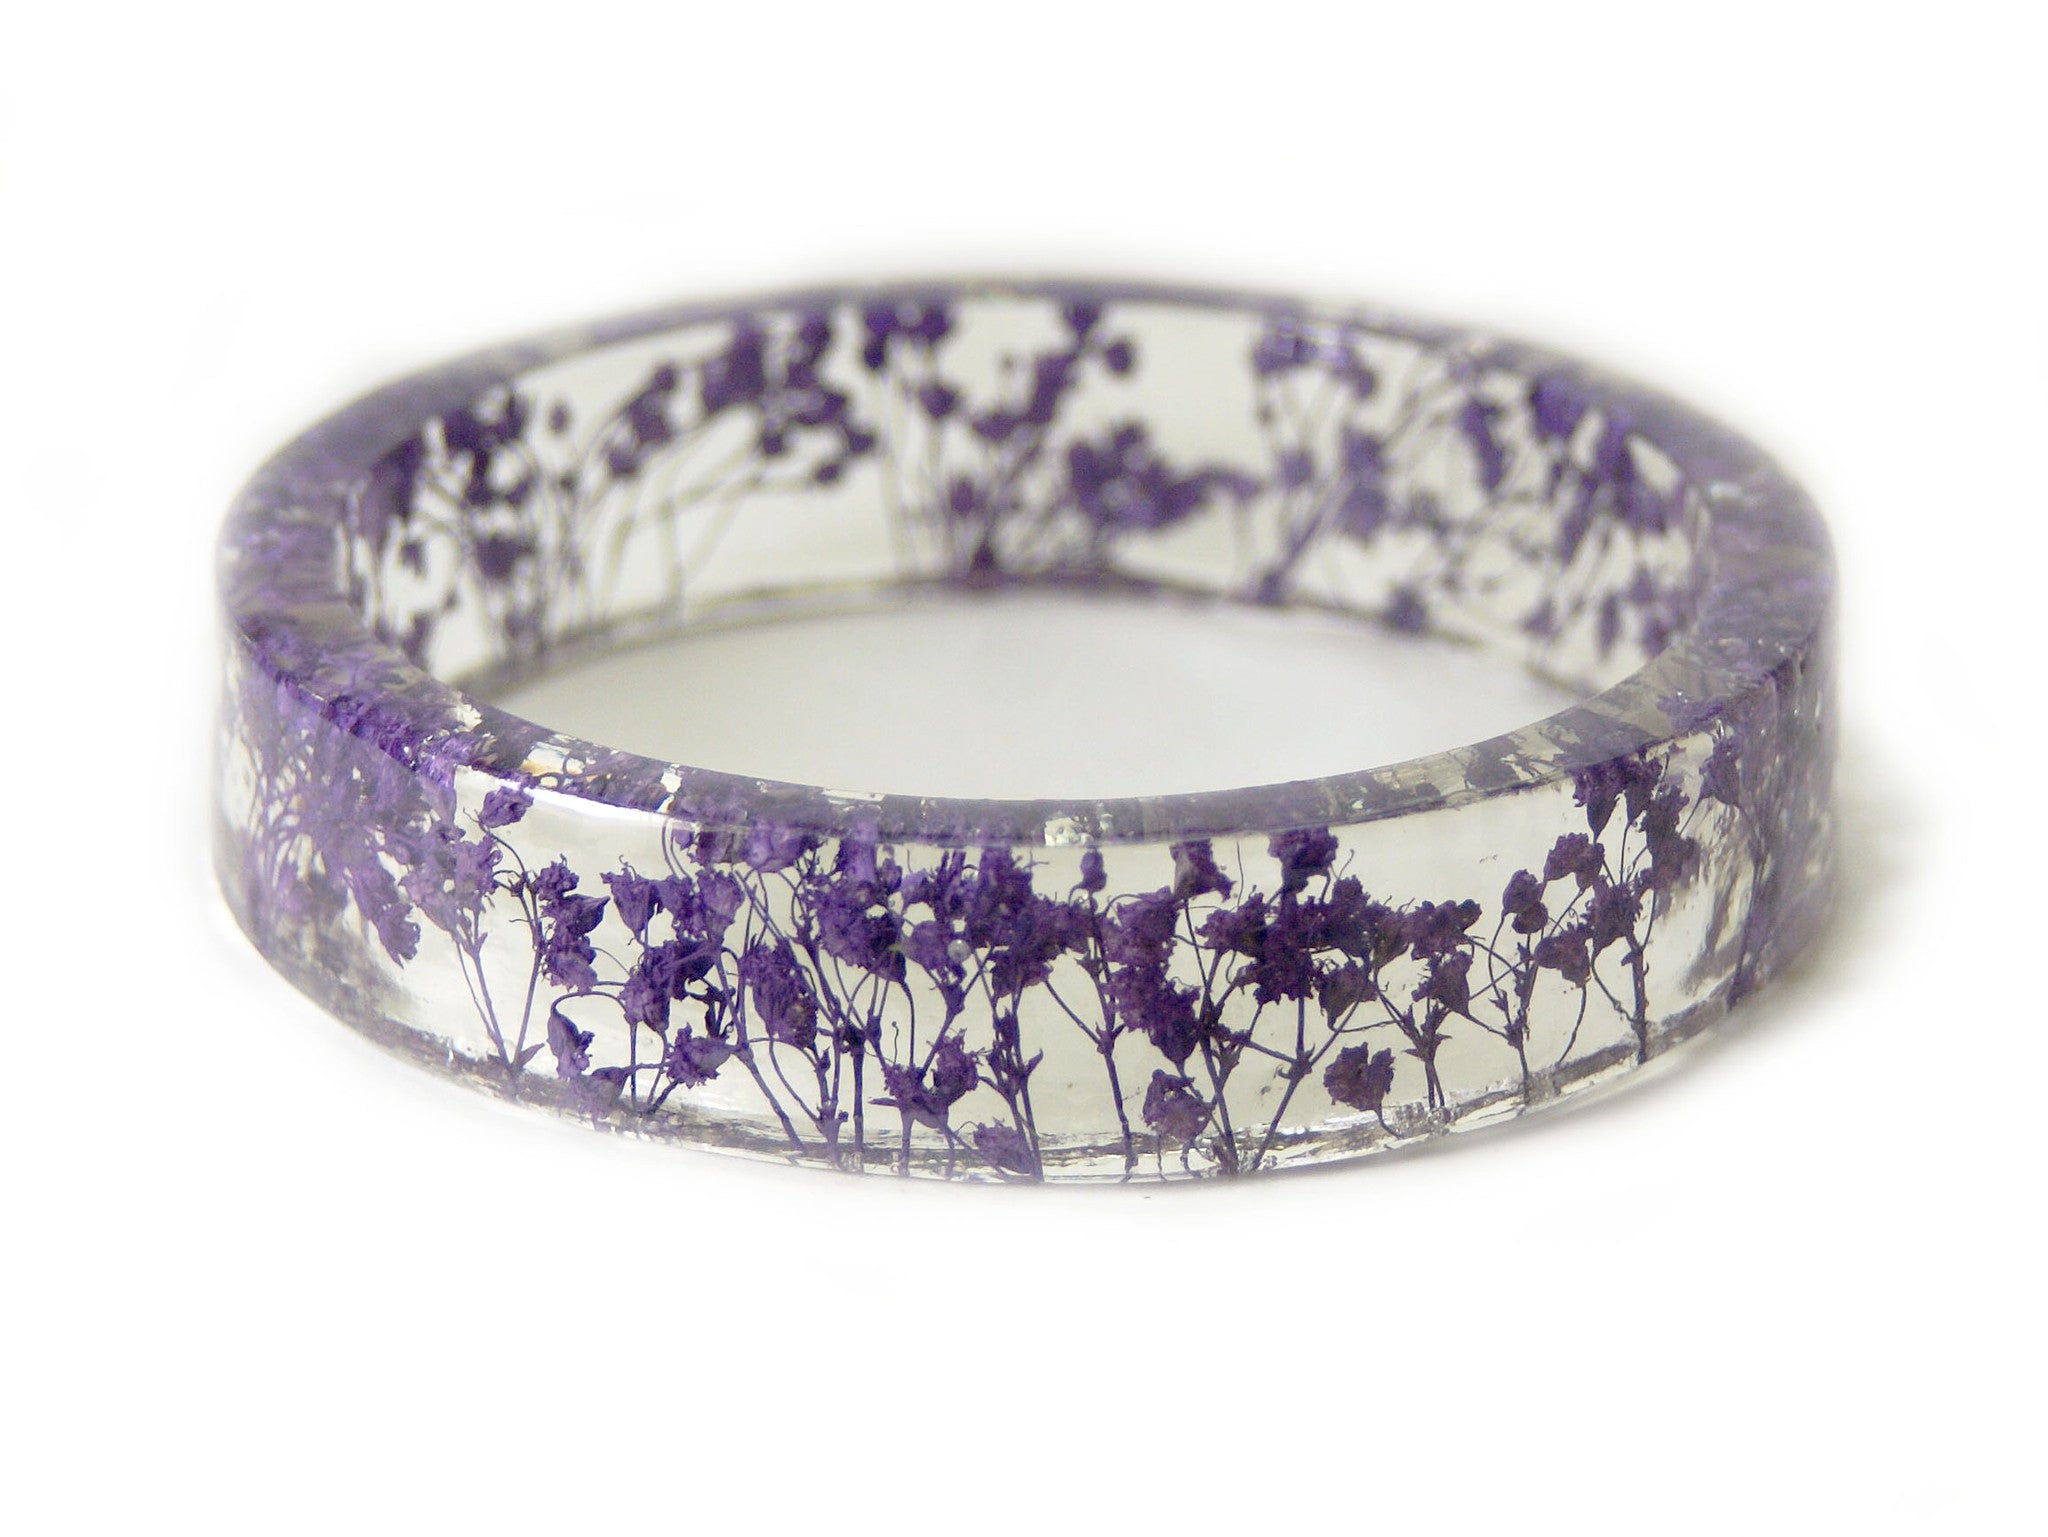 処分特価品 【FOR Lucille】Purple flower bracelet アウトレット 店:272円  ブレスレット